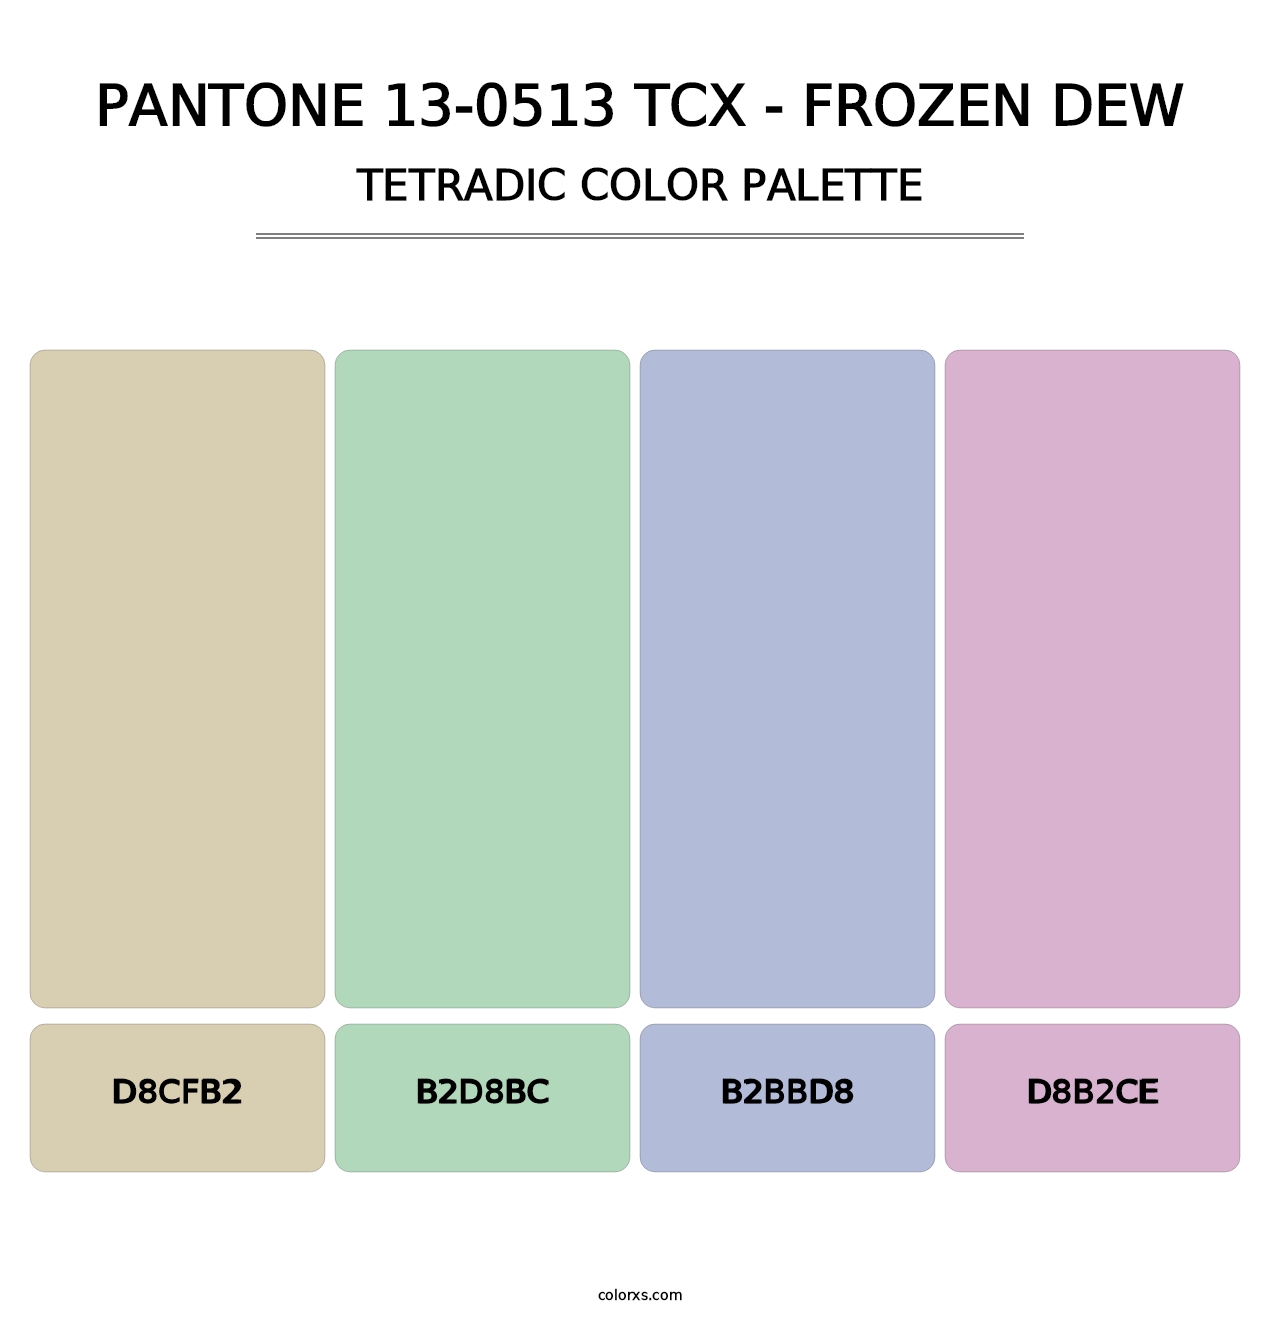 PANTONE 13-0513 TCX - Frozen Dew - Tetradic Color Palette